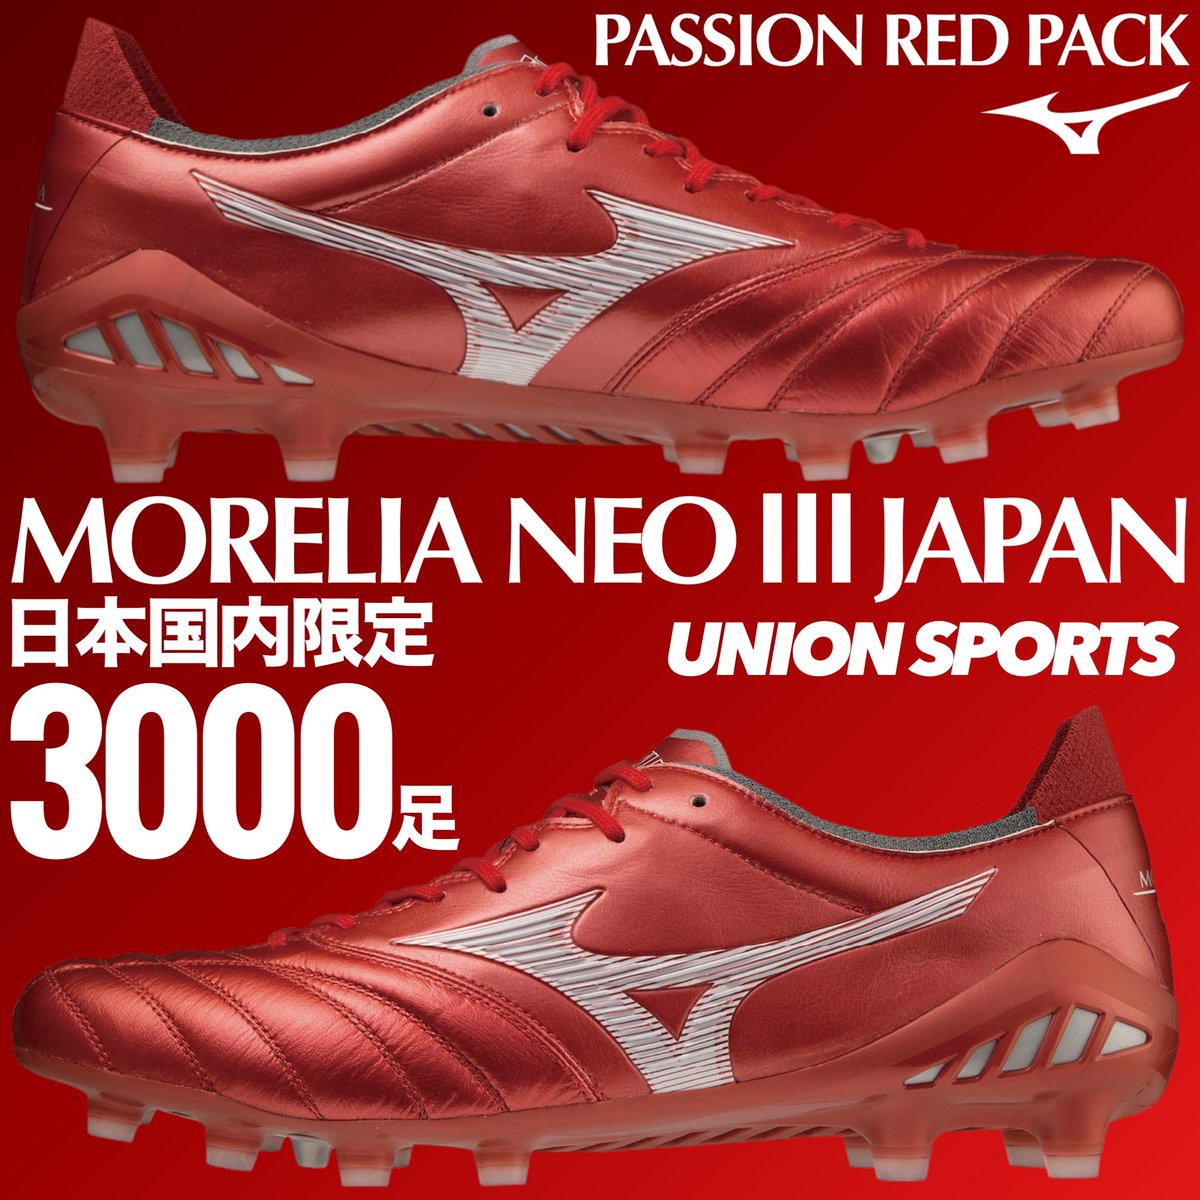 モレリアネオ3 Passion Red Pack-